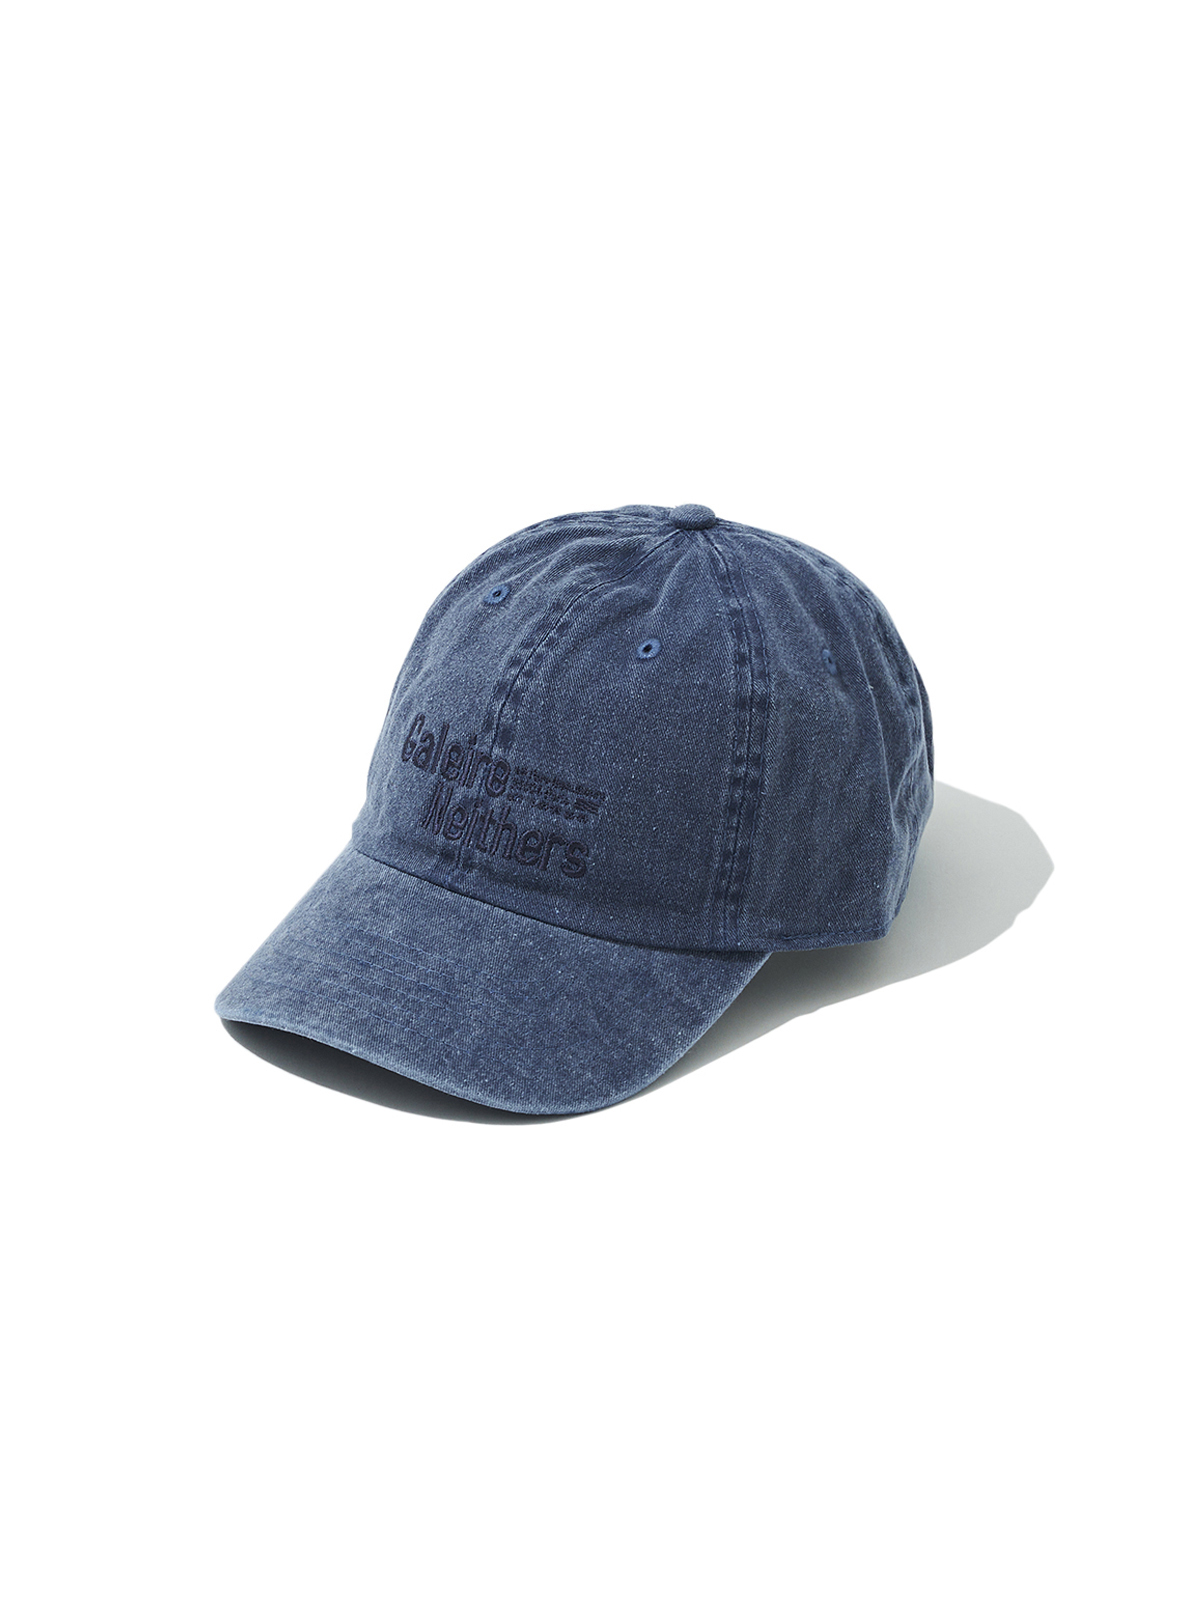 GALERIE CAP (BLUE)